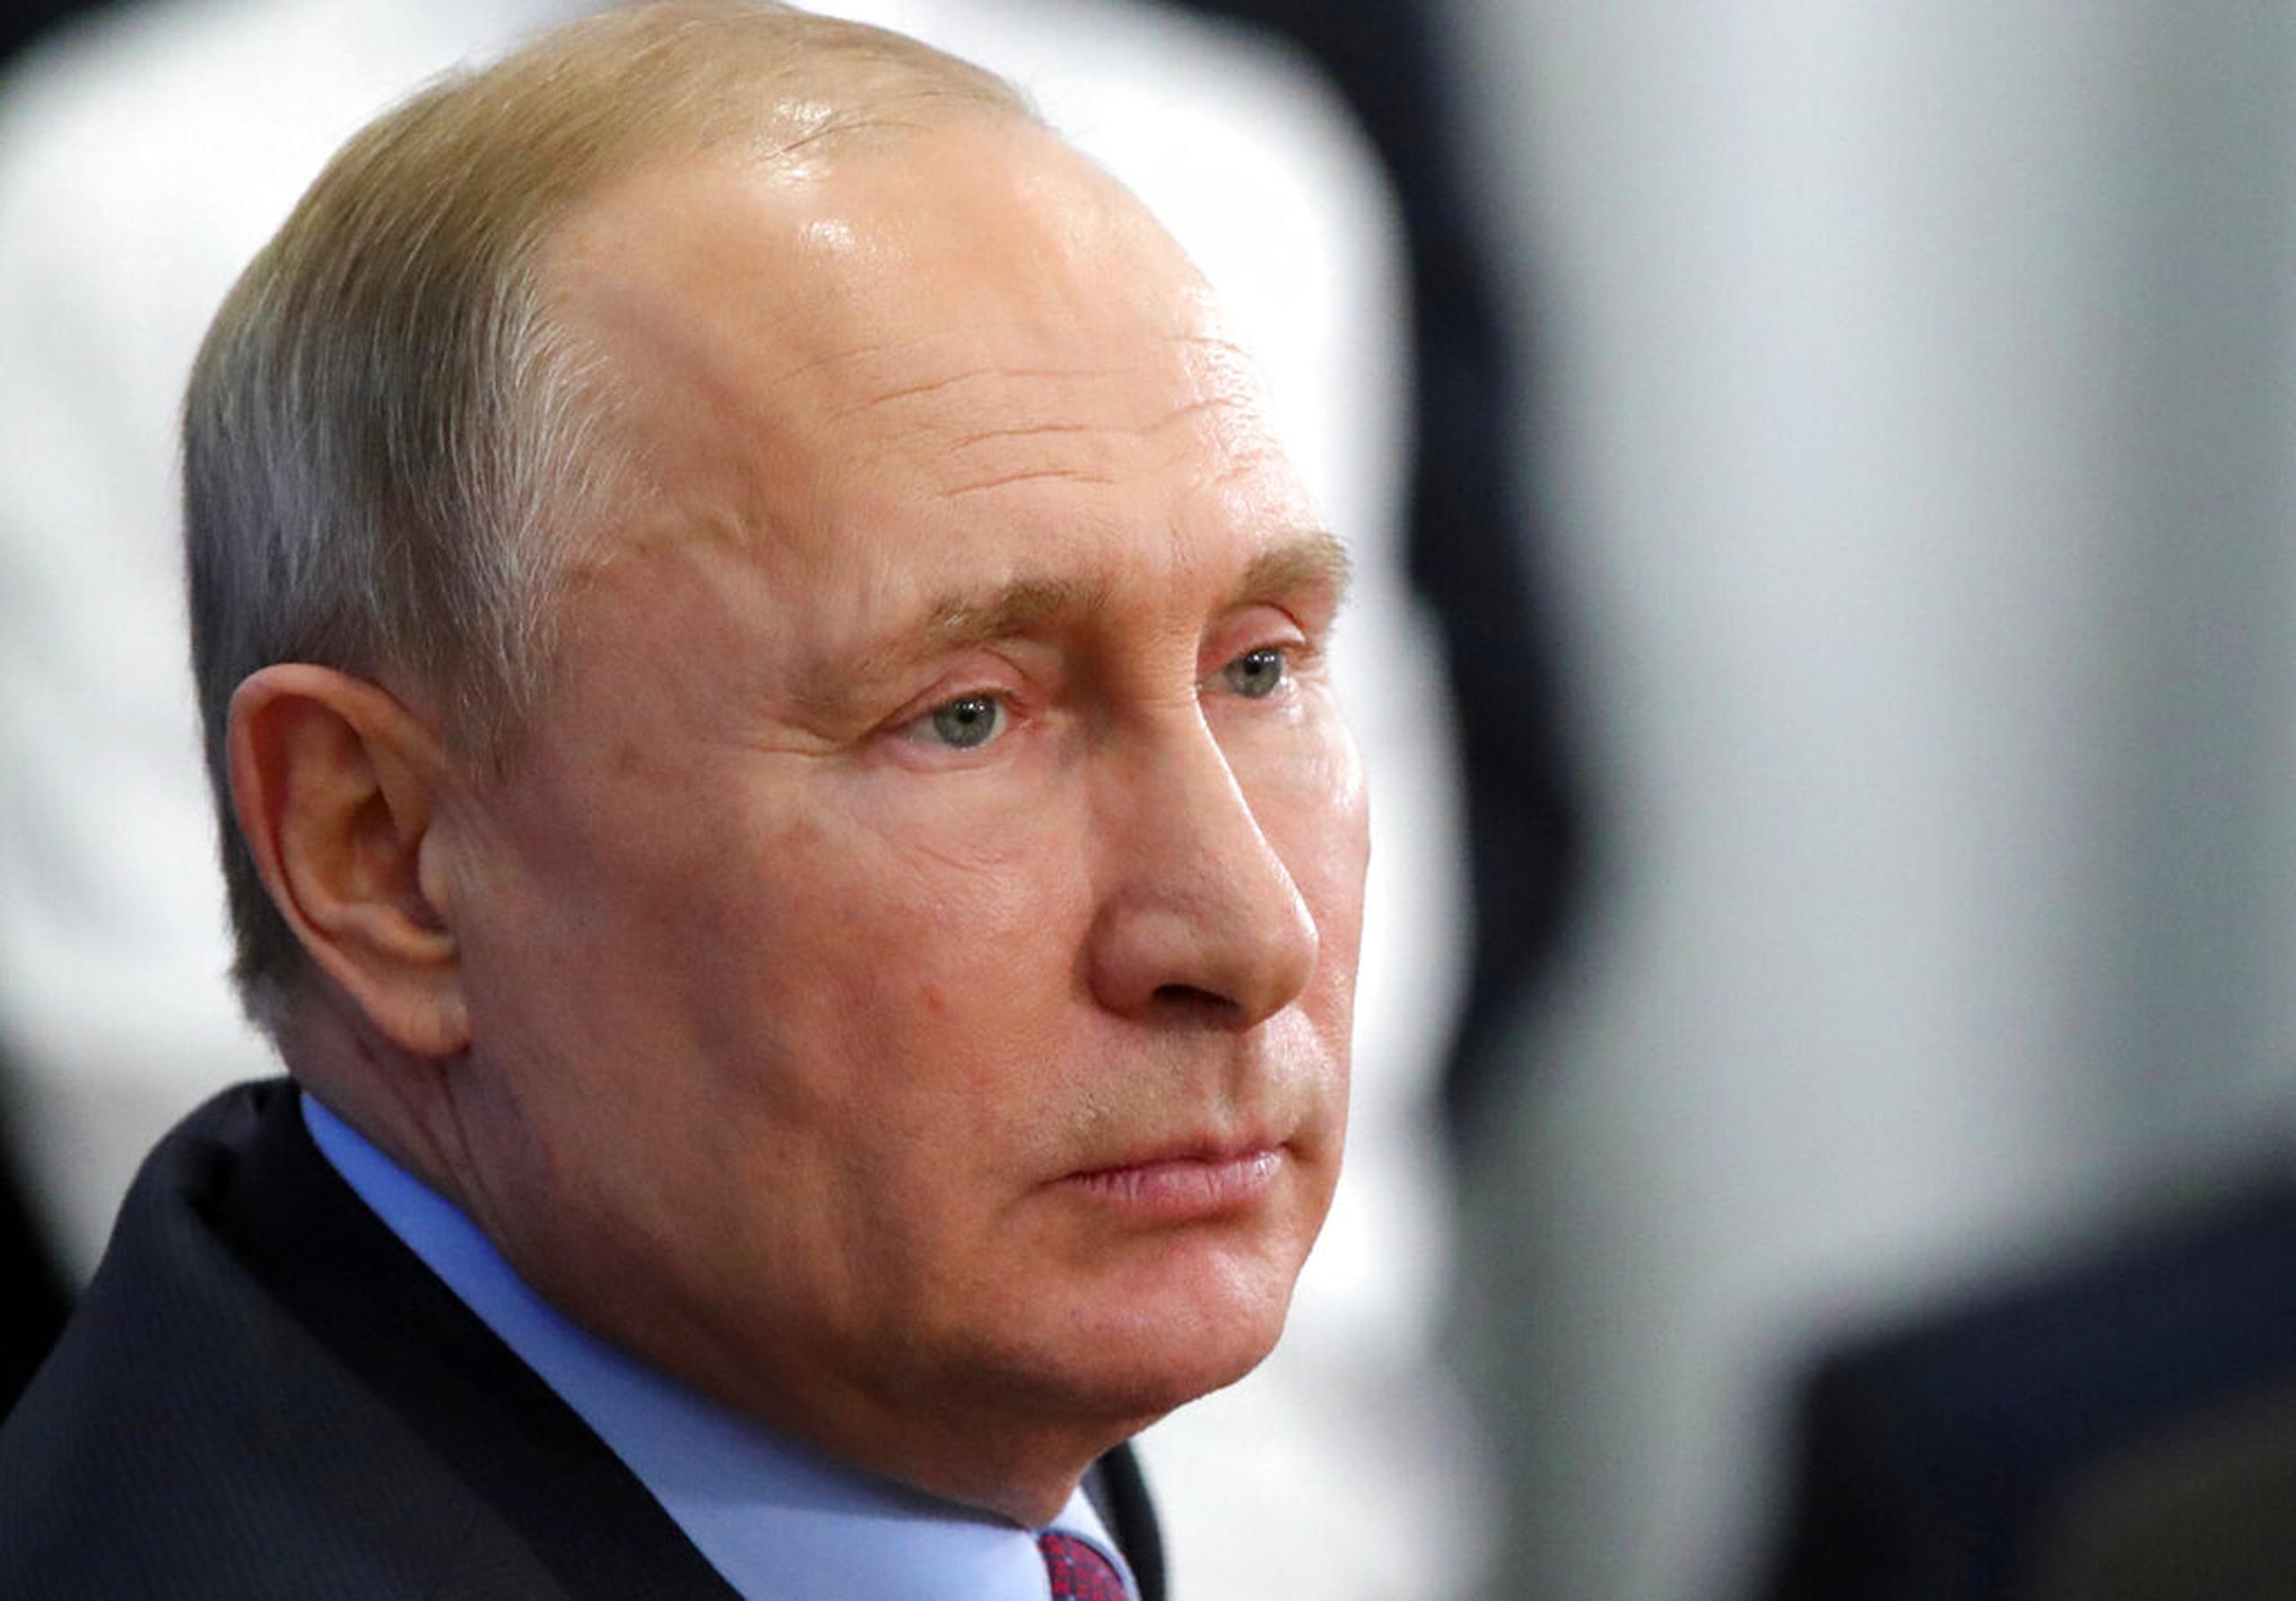 El presidente ruso, Vladimir Putin, se quedará en la residencia campestre en Novo-Ogariovo, situada a las afueras de Moscú, informó su portavoz.